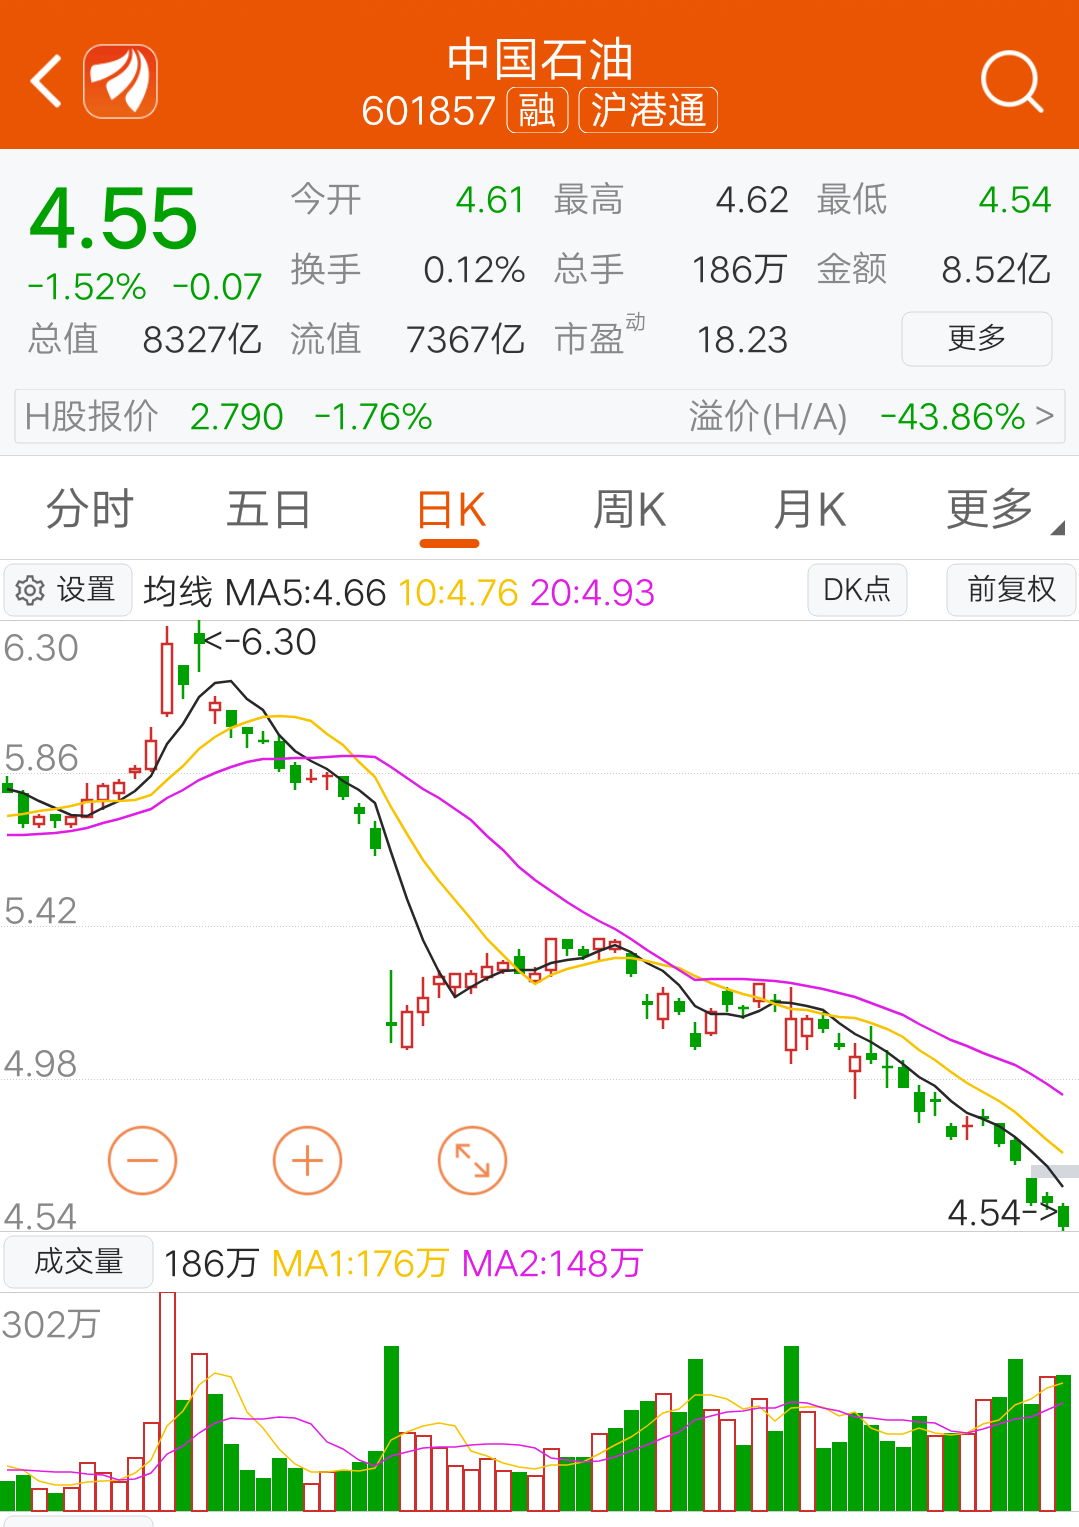 pg电子:中国石油股票技术分析 
一人一笔一孤舟每天复盘喜与忧一夜风